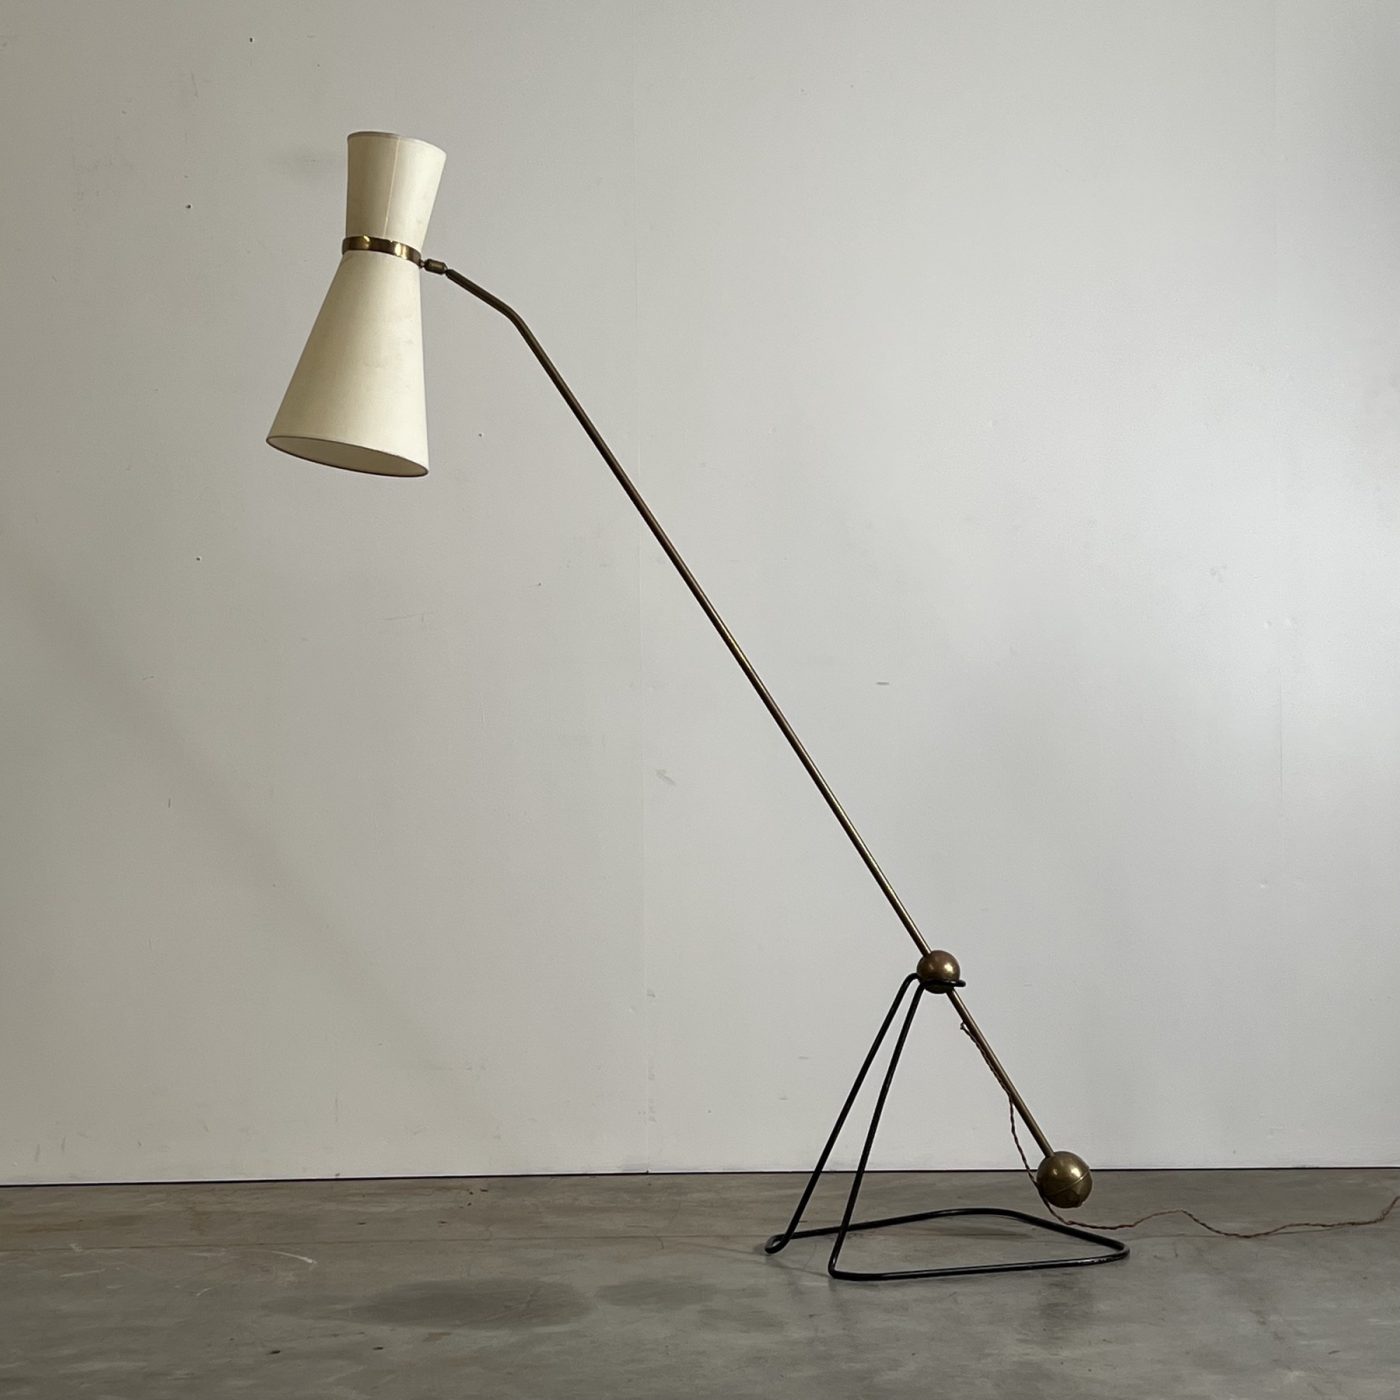 objet-vagabond-guariche-lamp0004